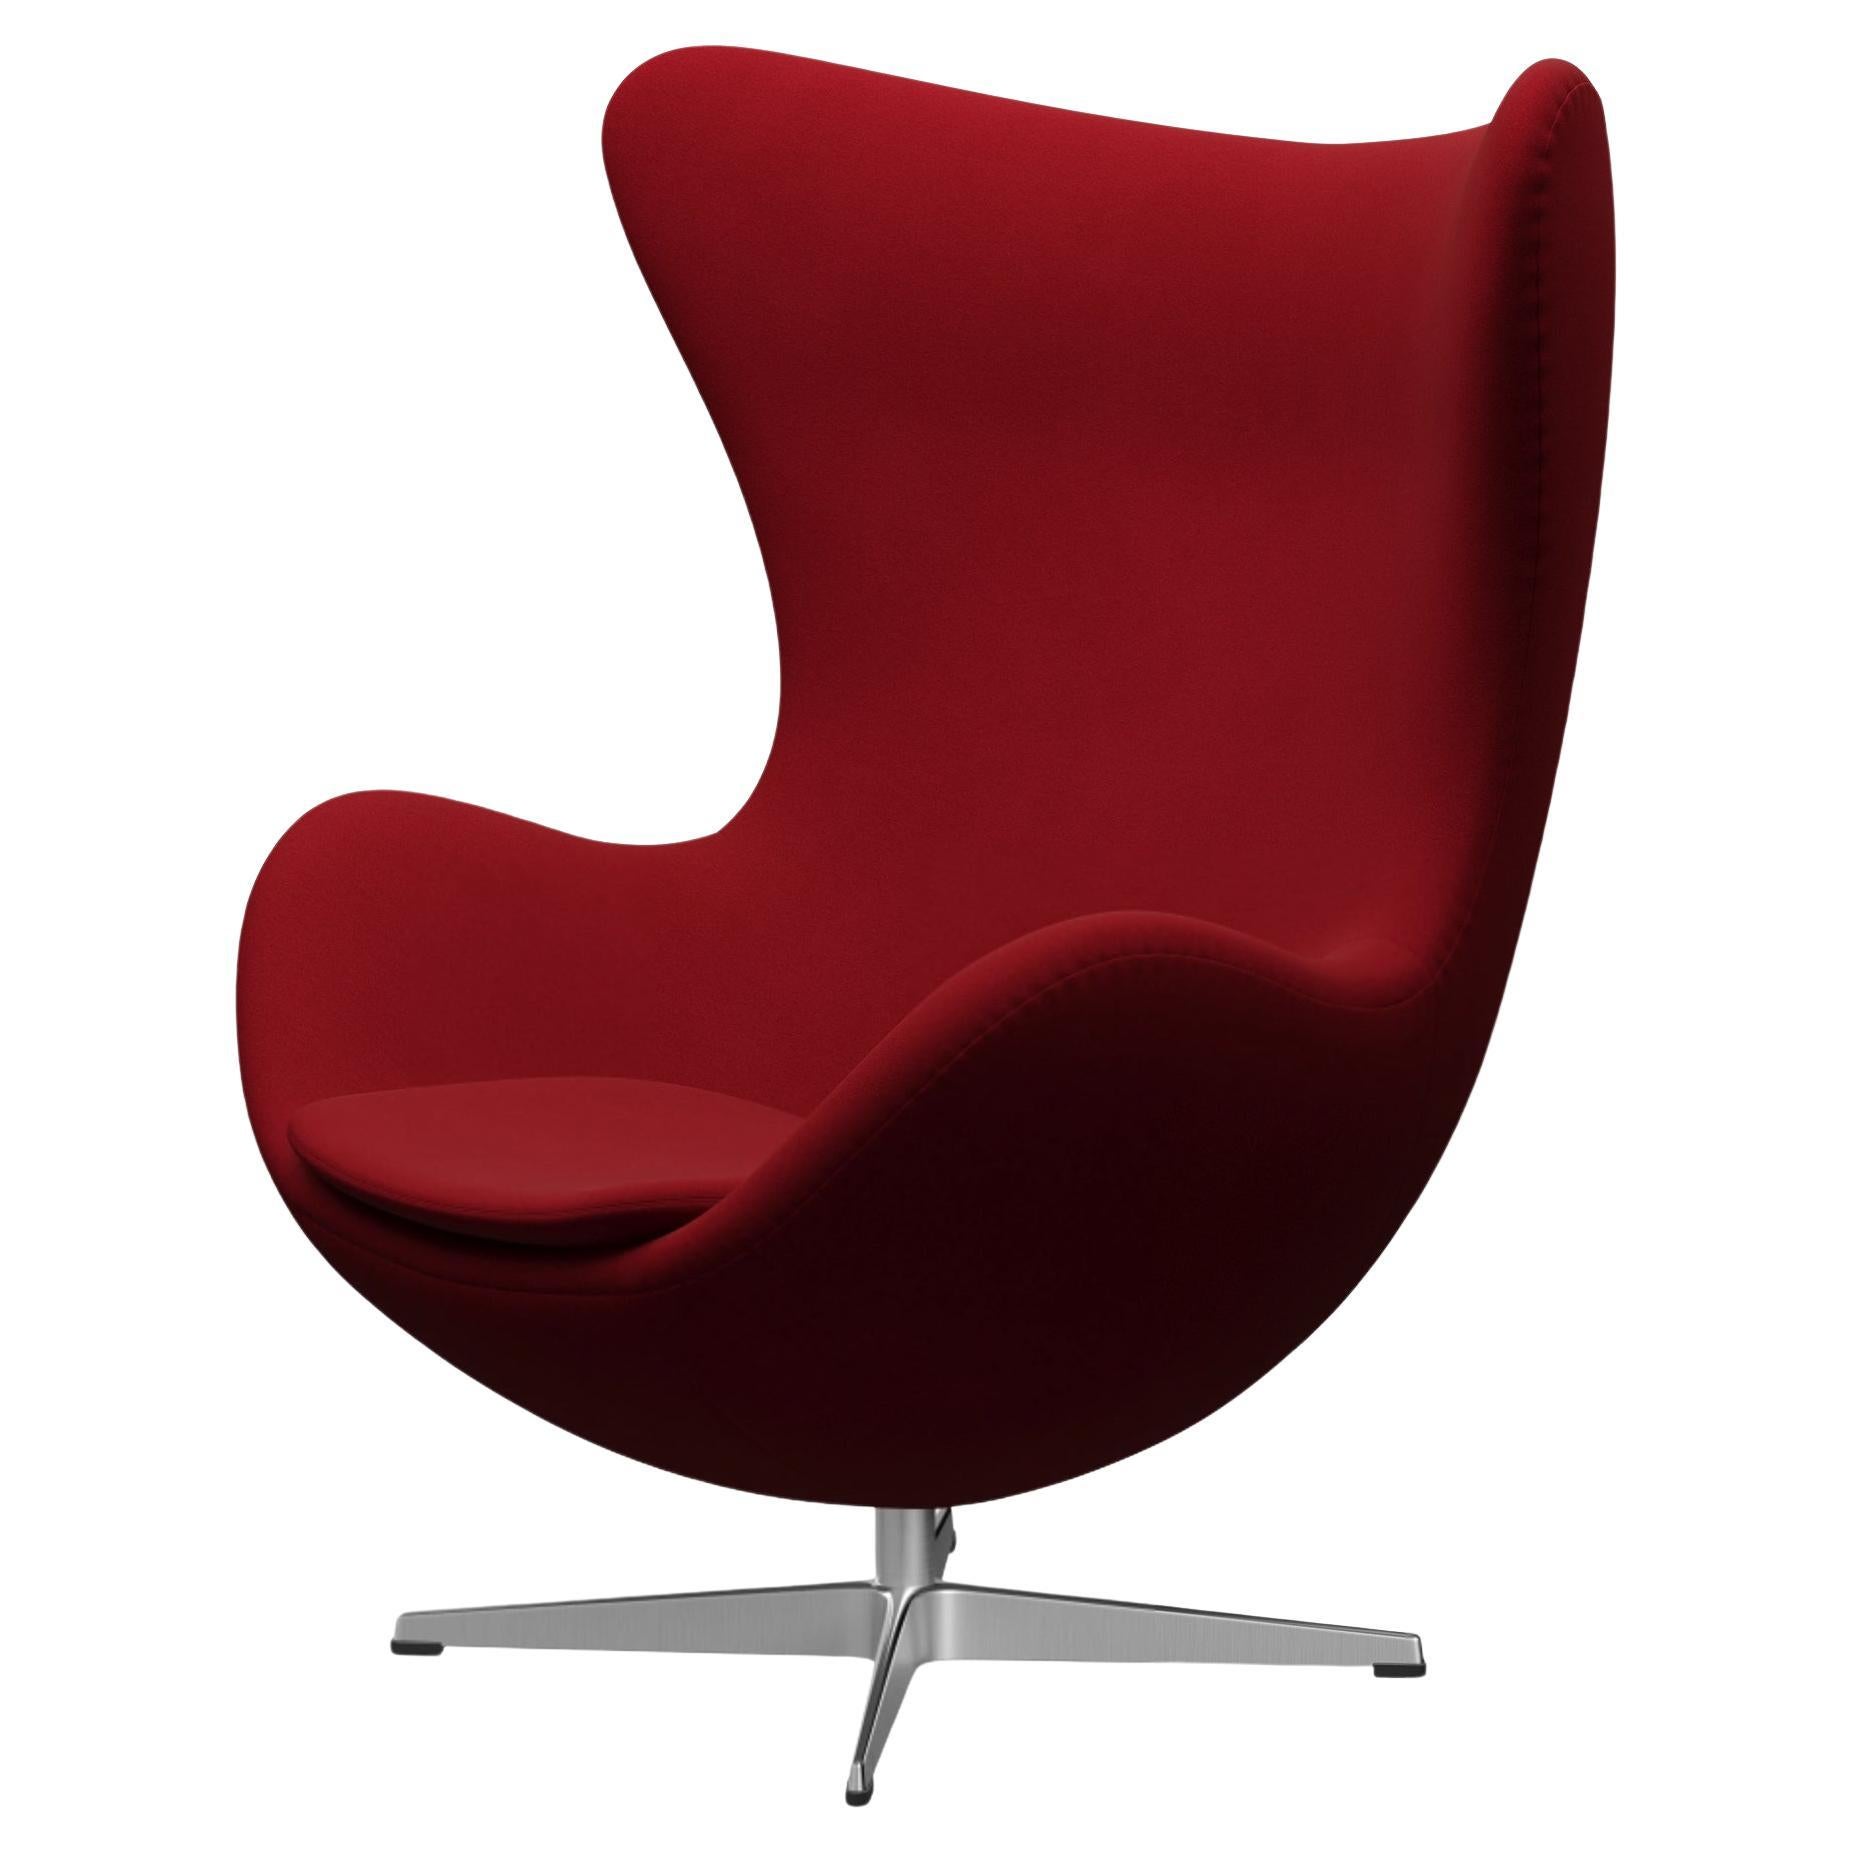 Arne Jacobsen 'Egg' Chair for Fritz Hansen in Fabric Upholstery (Cat. 3)